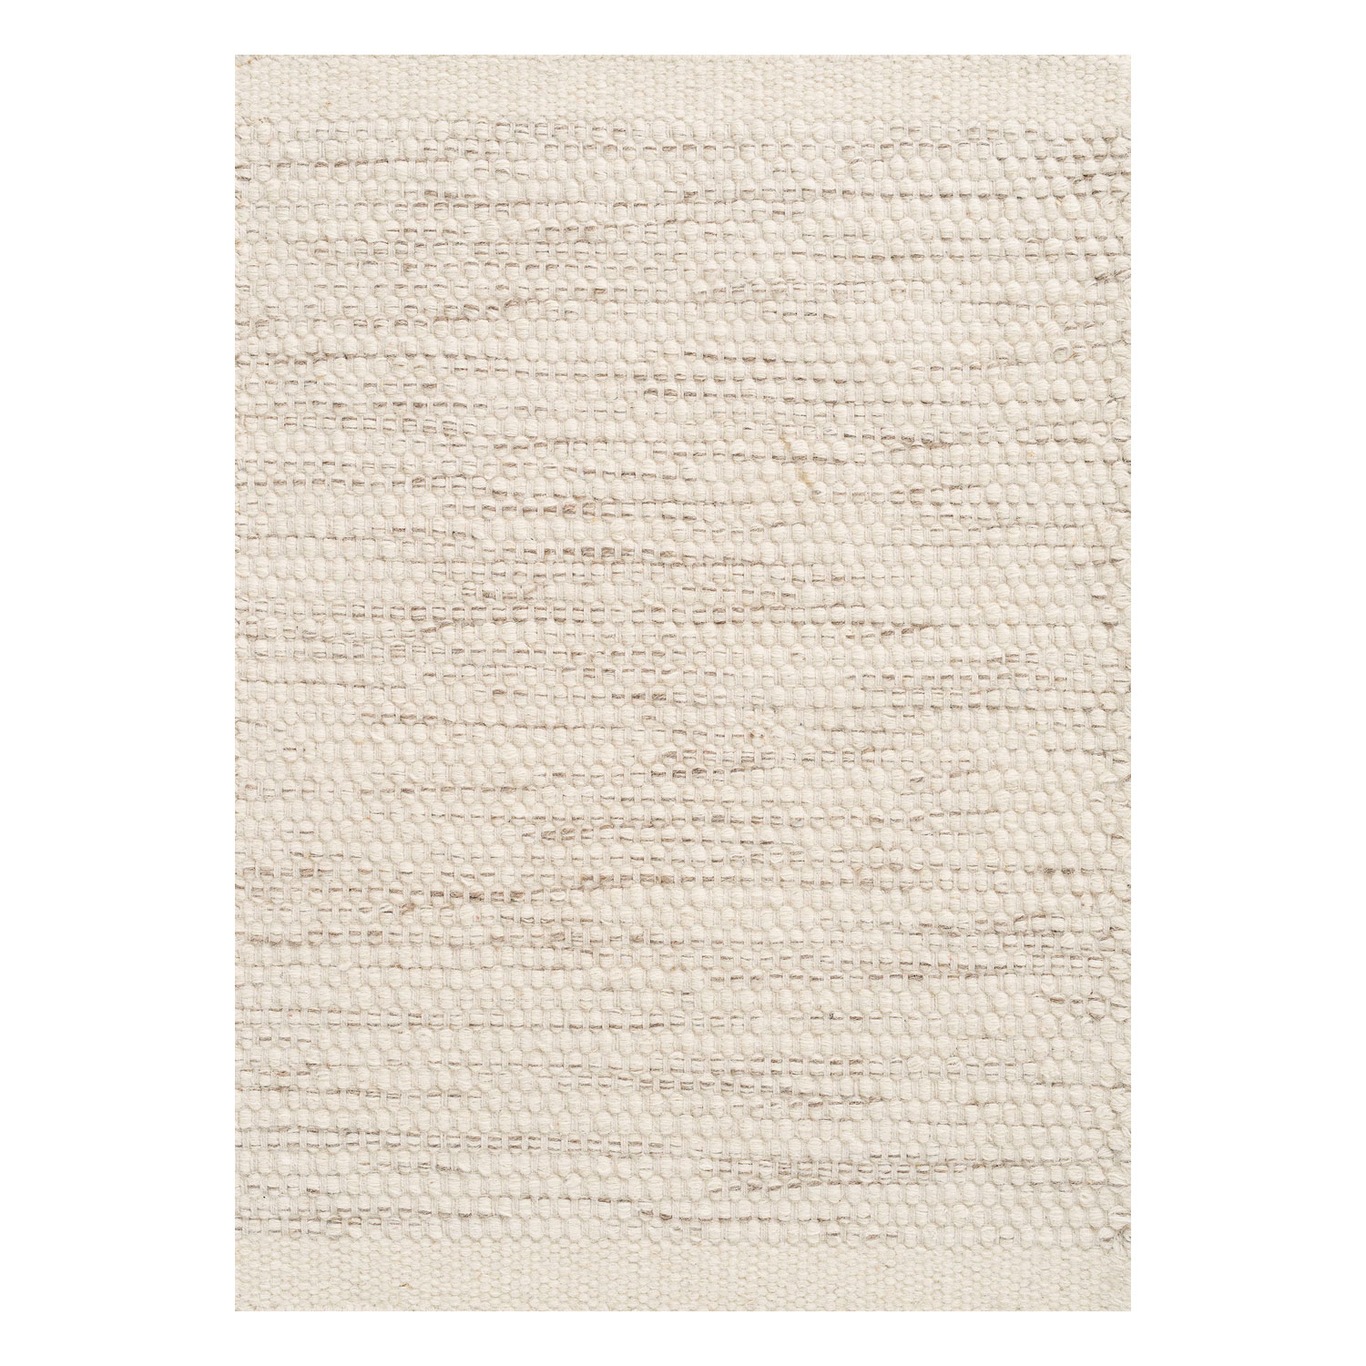 Asko Matta Off-white, 200x300 cm